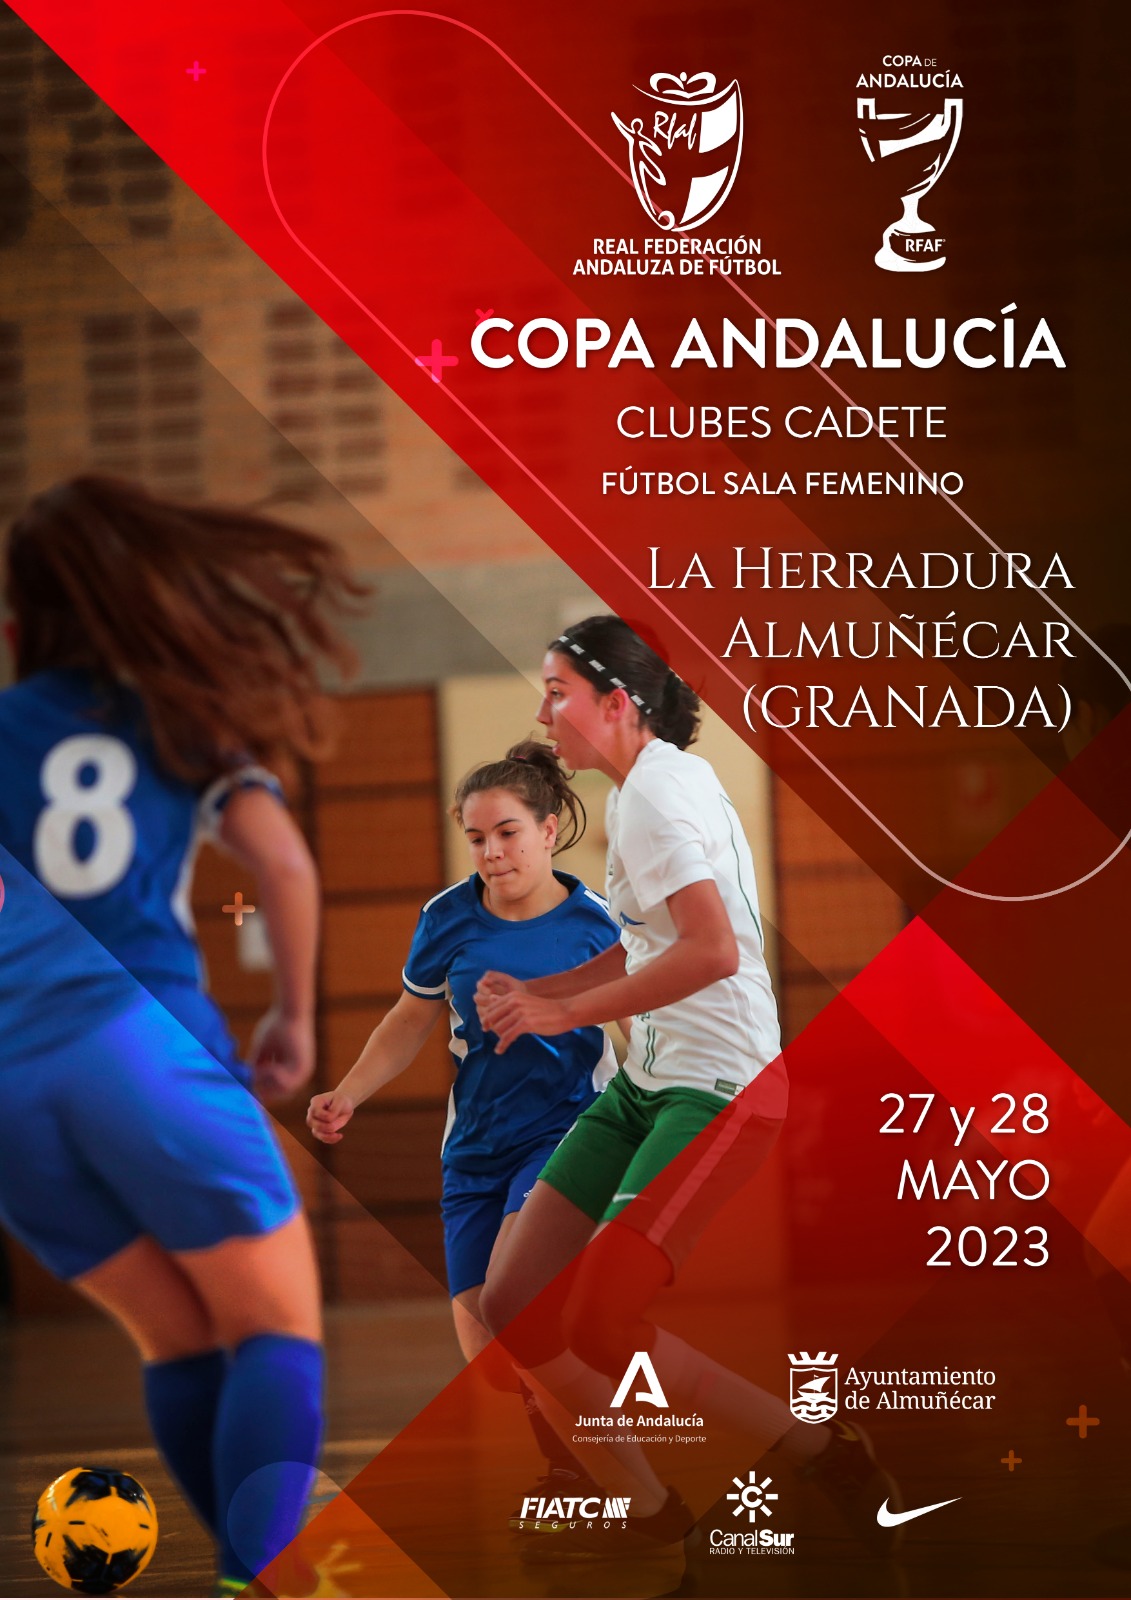 La primera eliminatoria de la Copa de Andalucía de Clubes Cadetes Femeninos de Fútbol Sala de celebra este fin de semana en La Herradura